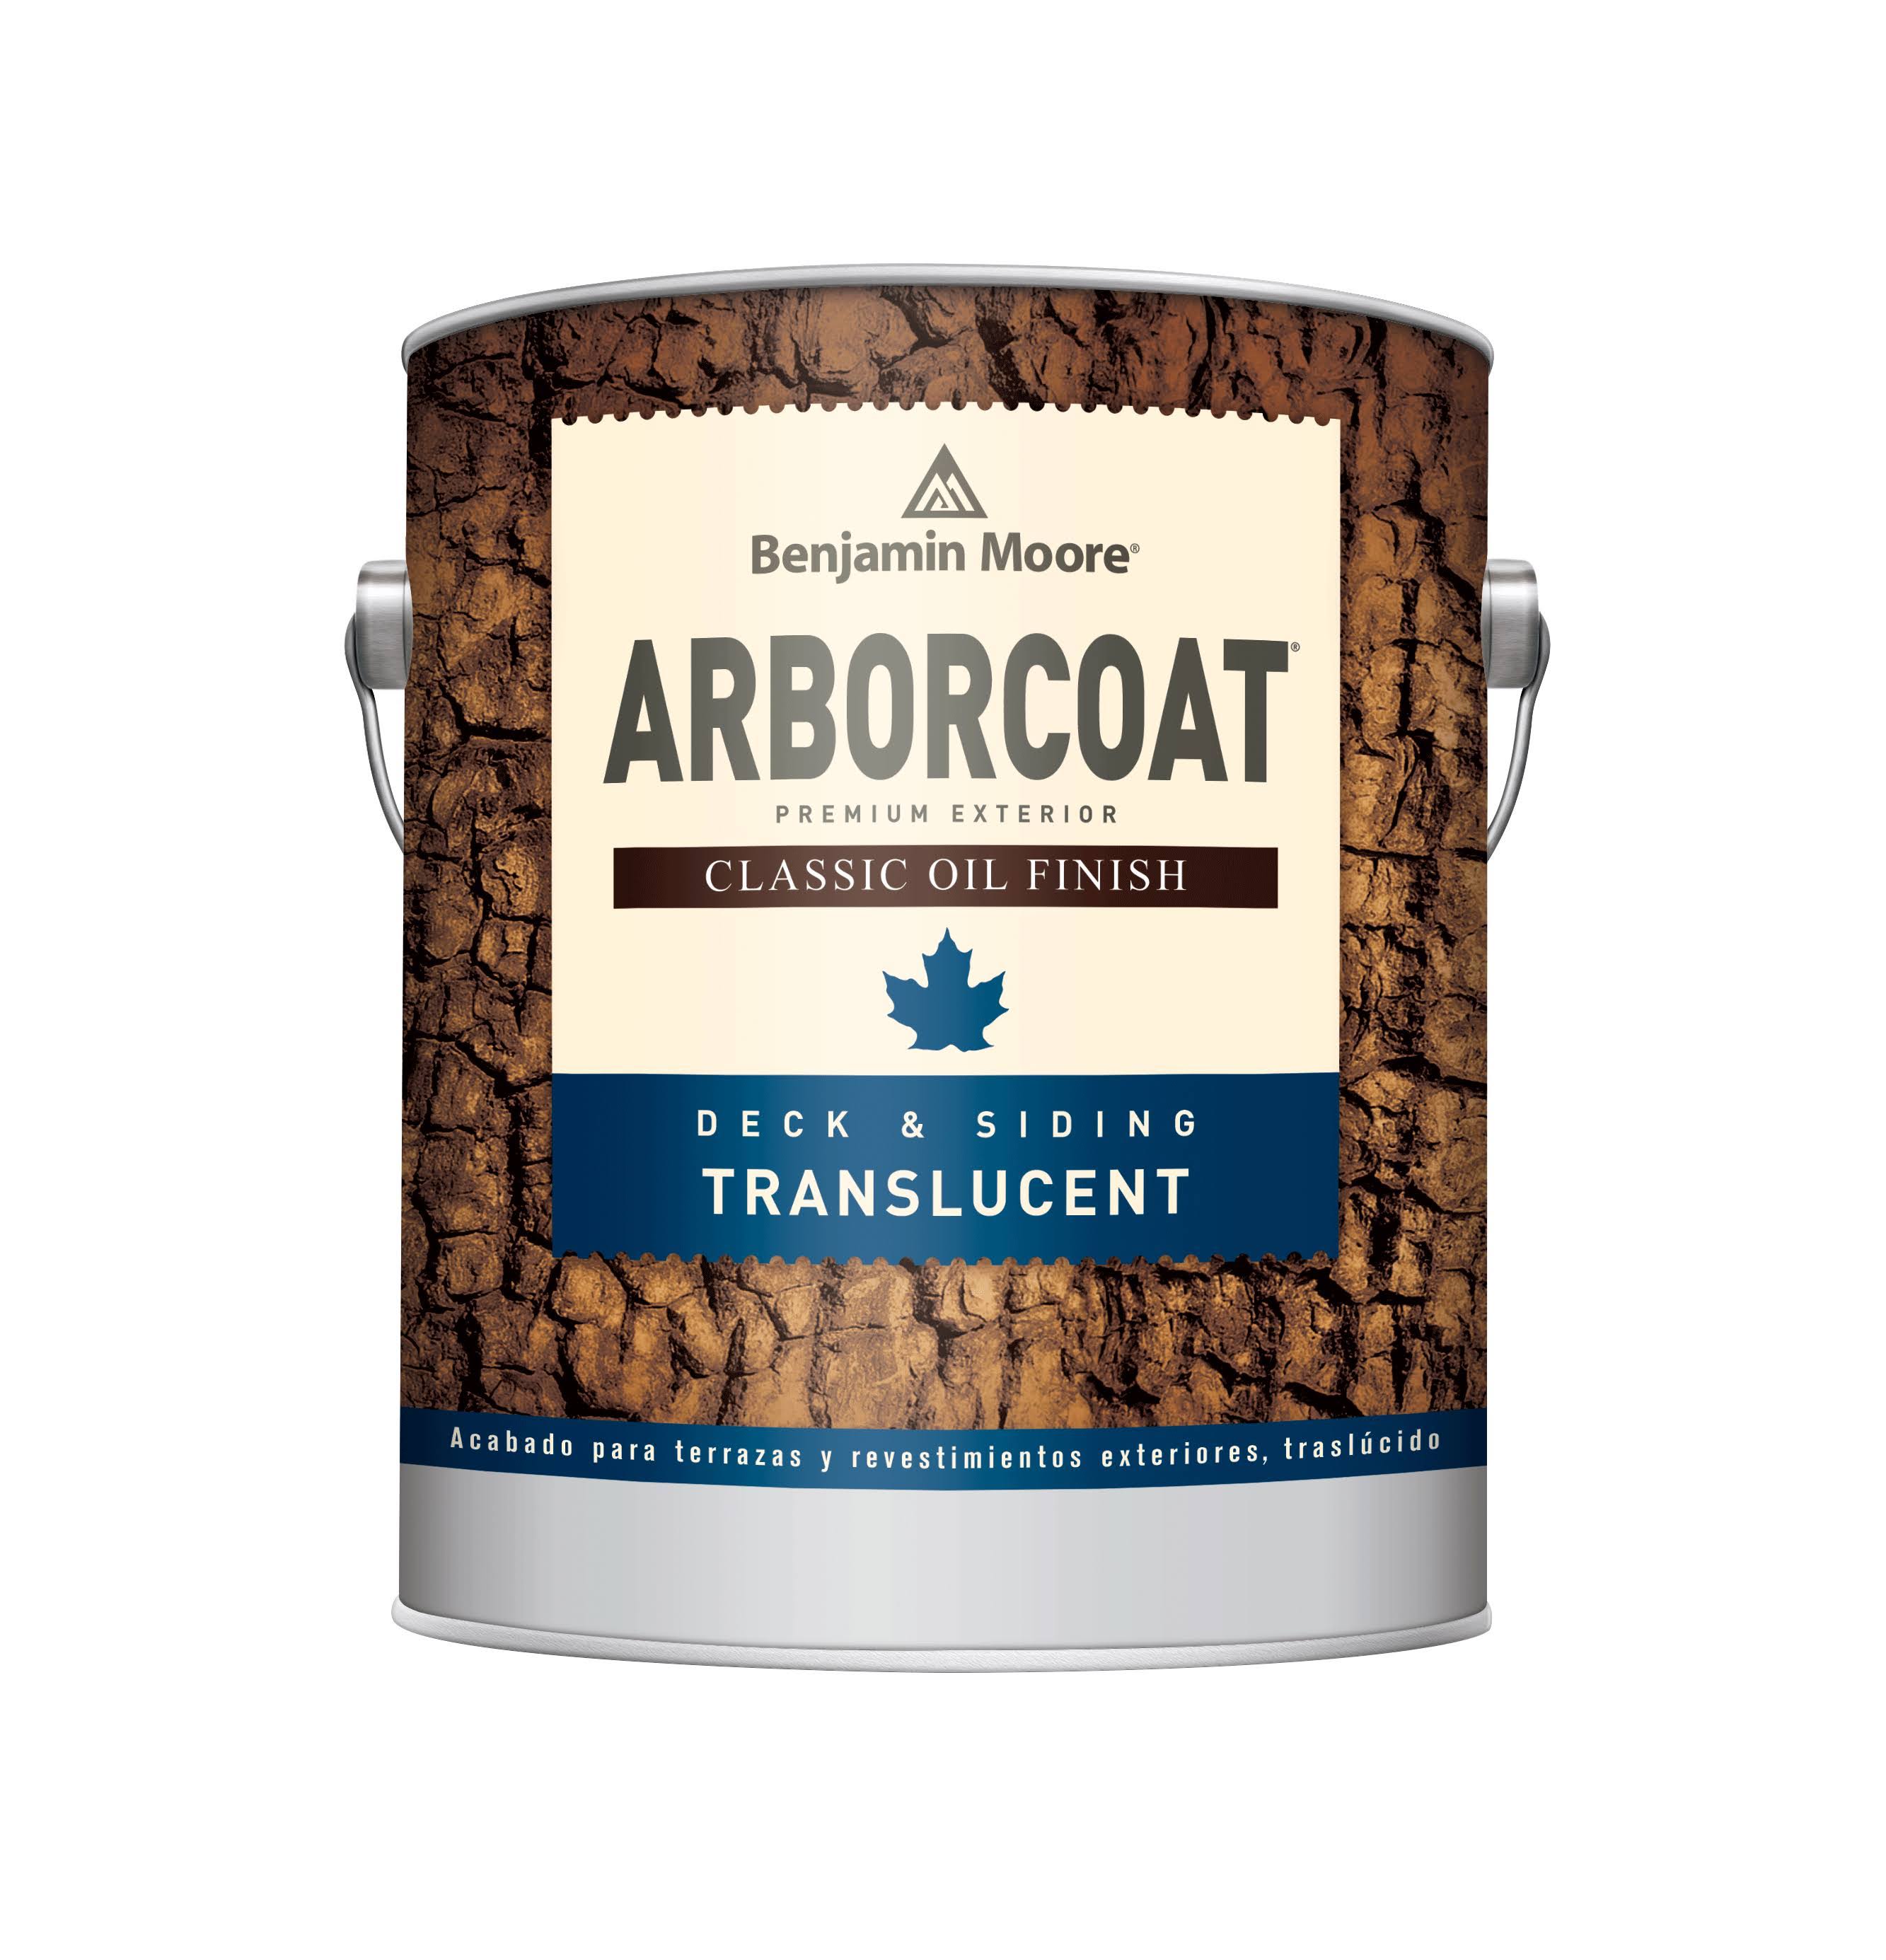 Arborcoat Exterior Stain Gallon / Translucent Classic Oil Finish 326